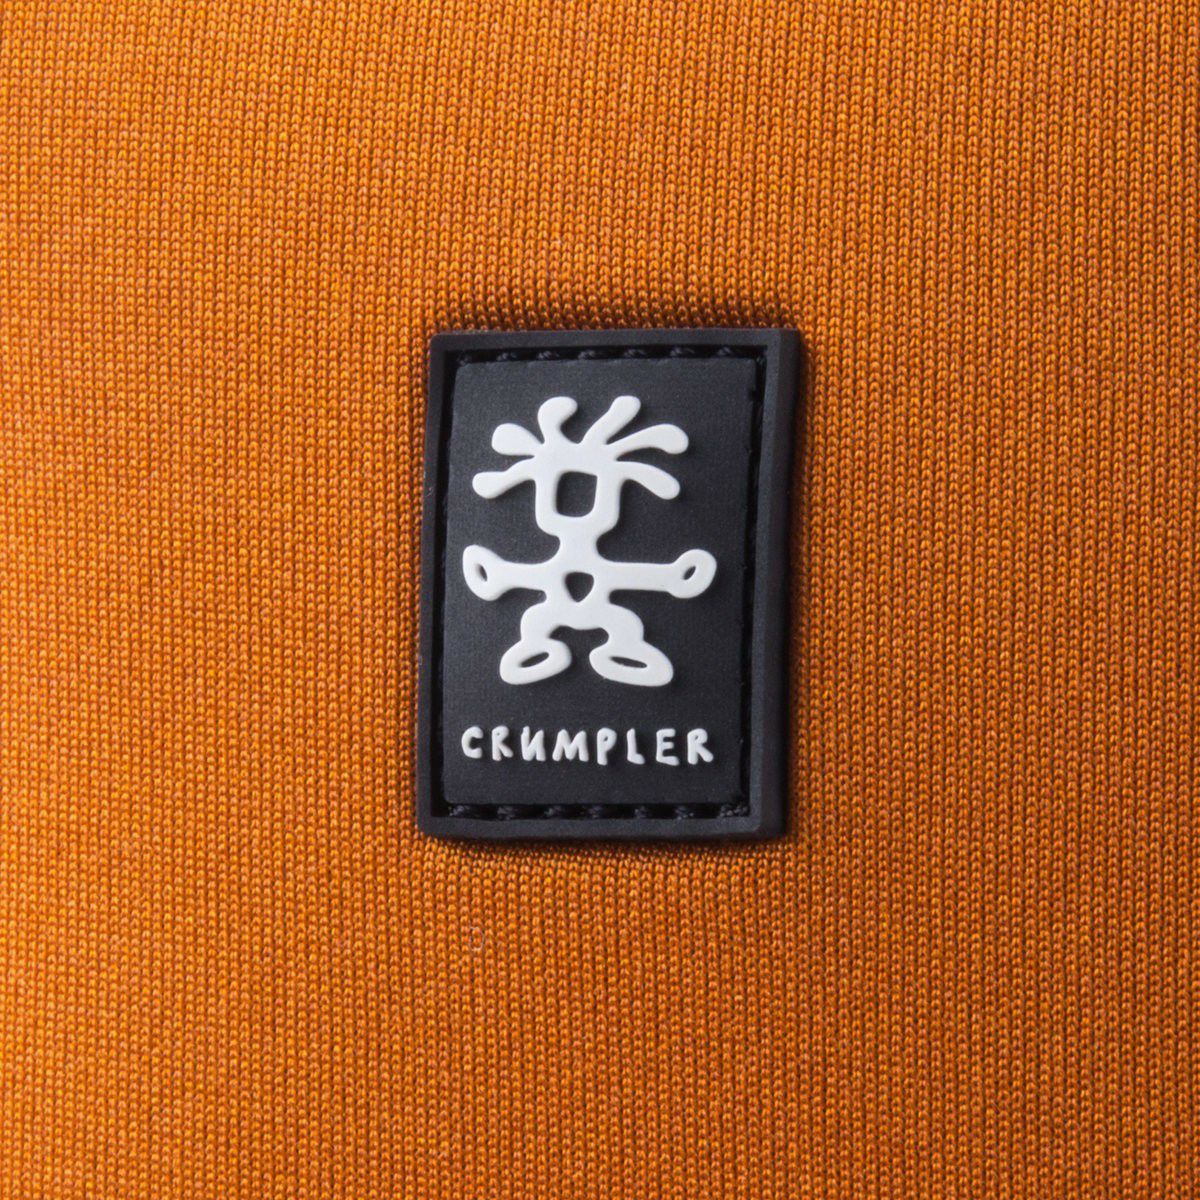 Crumpler Base Layer Camera Cube S burned orange anthracite (BLCC-S-003) žarko narančasta antracit torba za fotoaparat